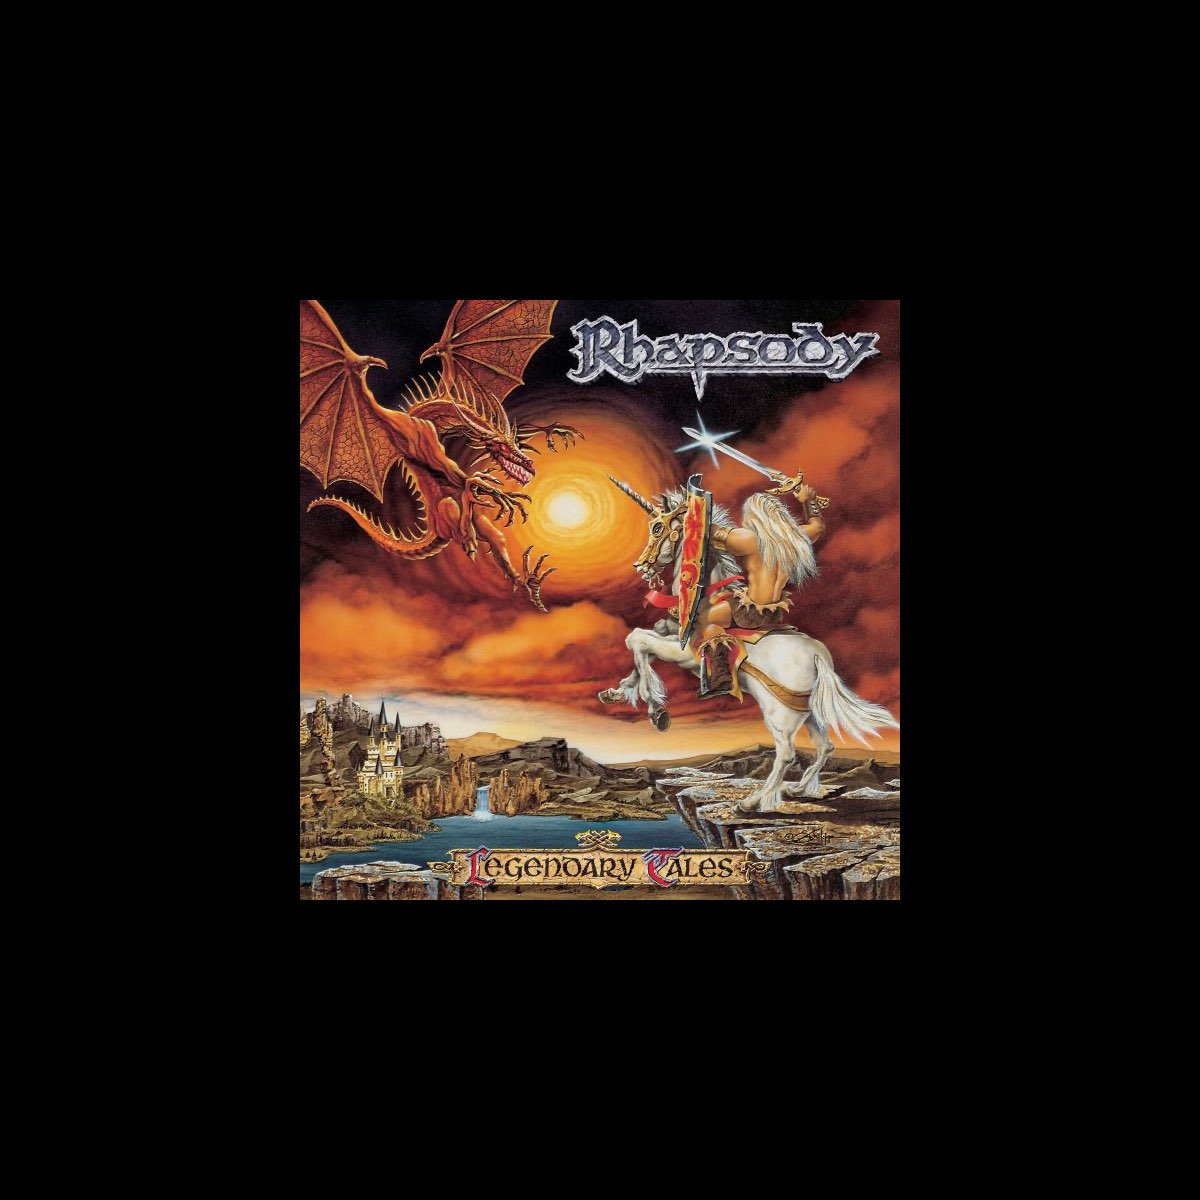 Legendary Tales - Album by Rhapsody - Apple Music